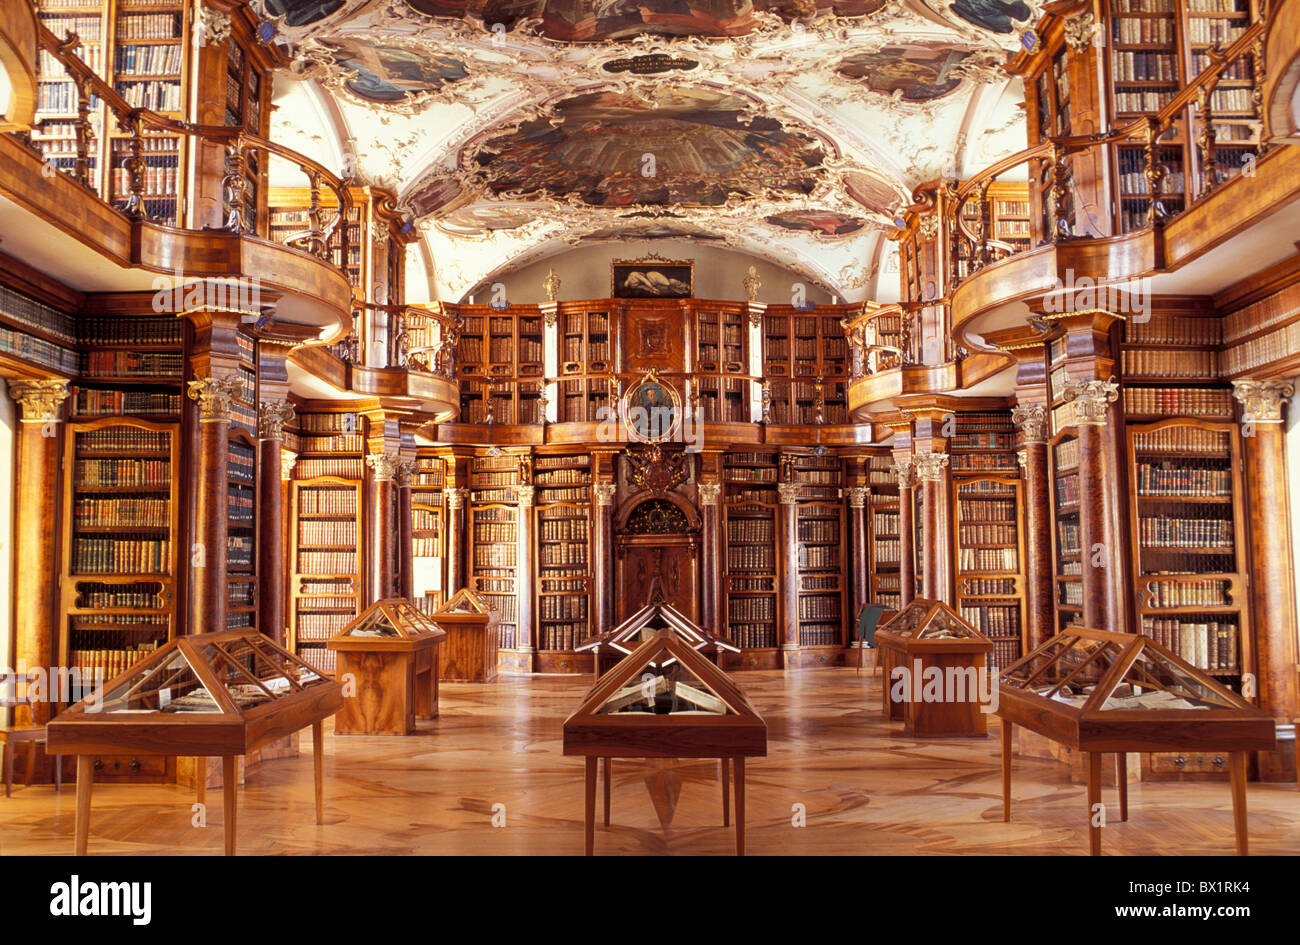 barocke Stadt historische Bibliothek St. Gallen Bleistift Bibliothek  Schweiz Europa Stadt UNESCO Welt kulturelle er Stockfotografie - Alamy